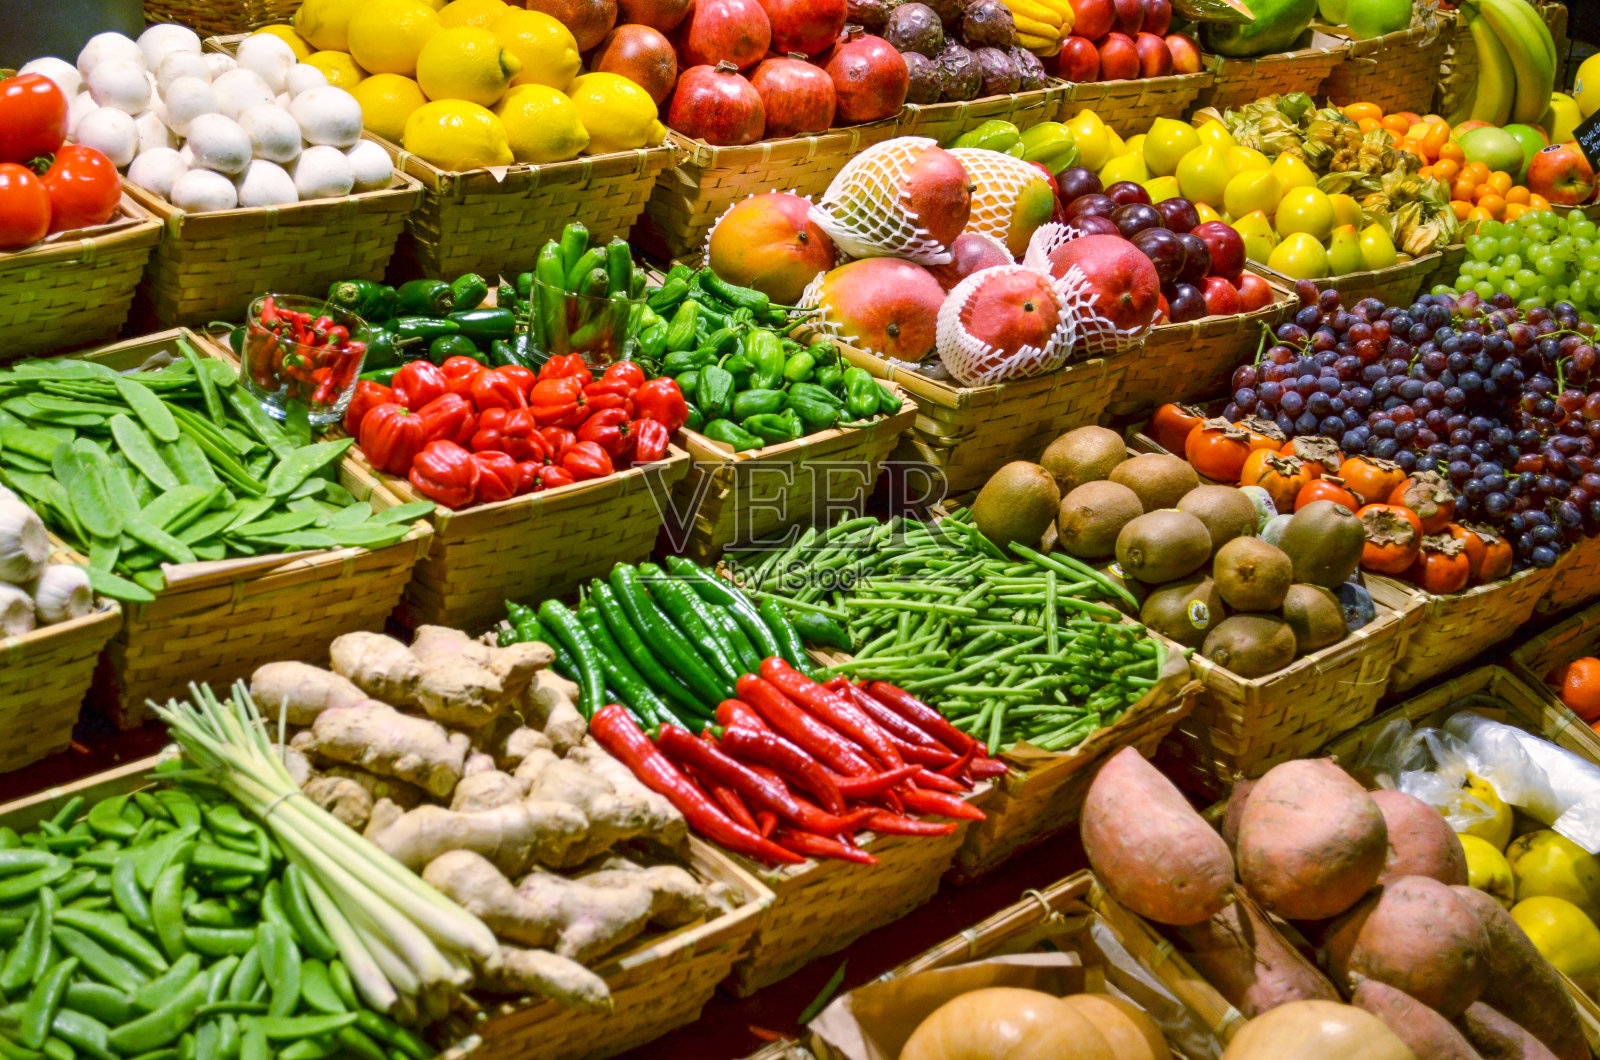 水果市场有各种各样五颜六色的新鲜水果和蔬菜照片摄影图片